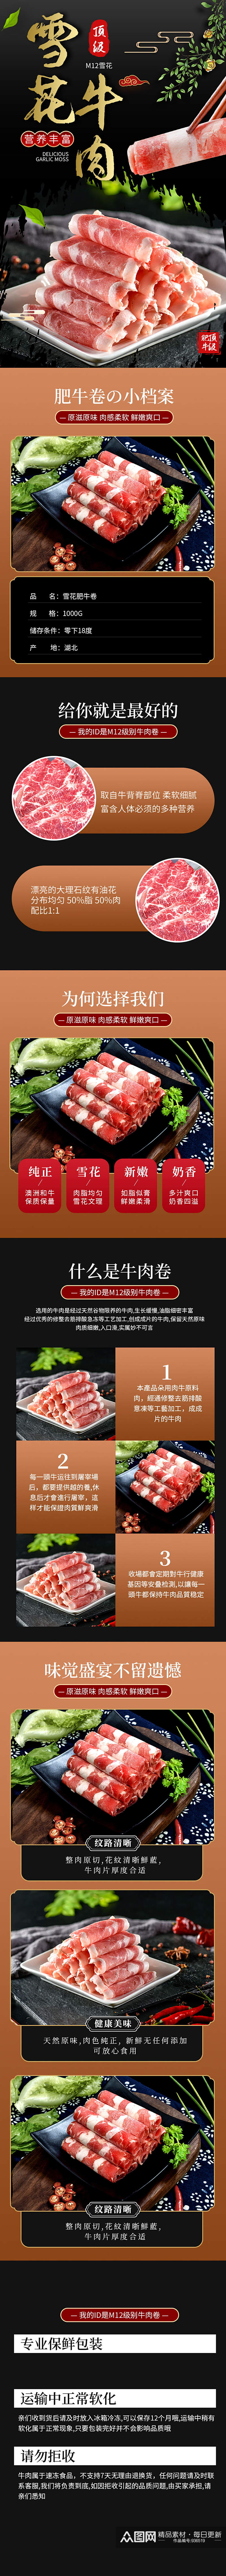 中国风雪花肥牛卷火锅料理详情页素材